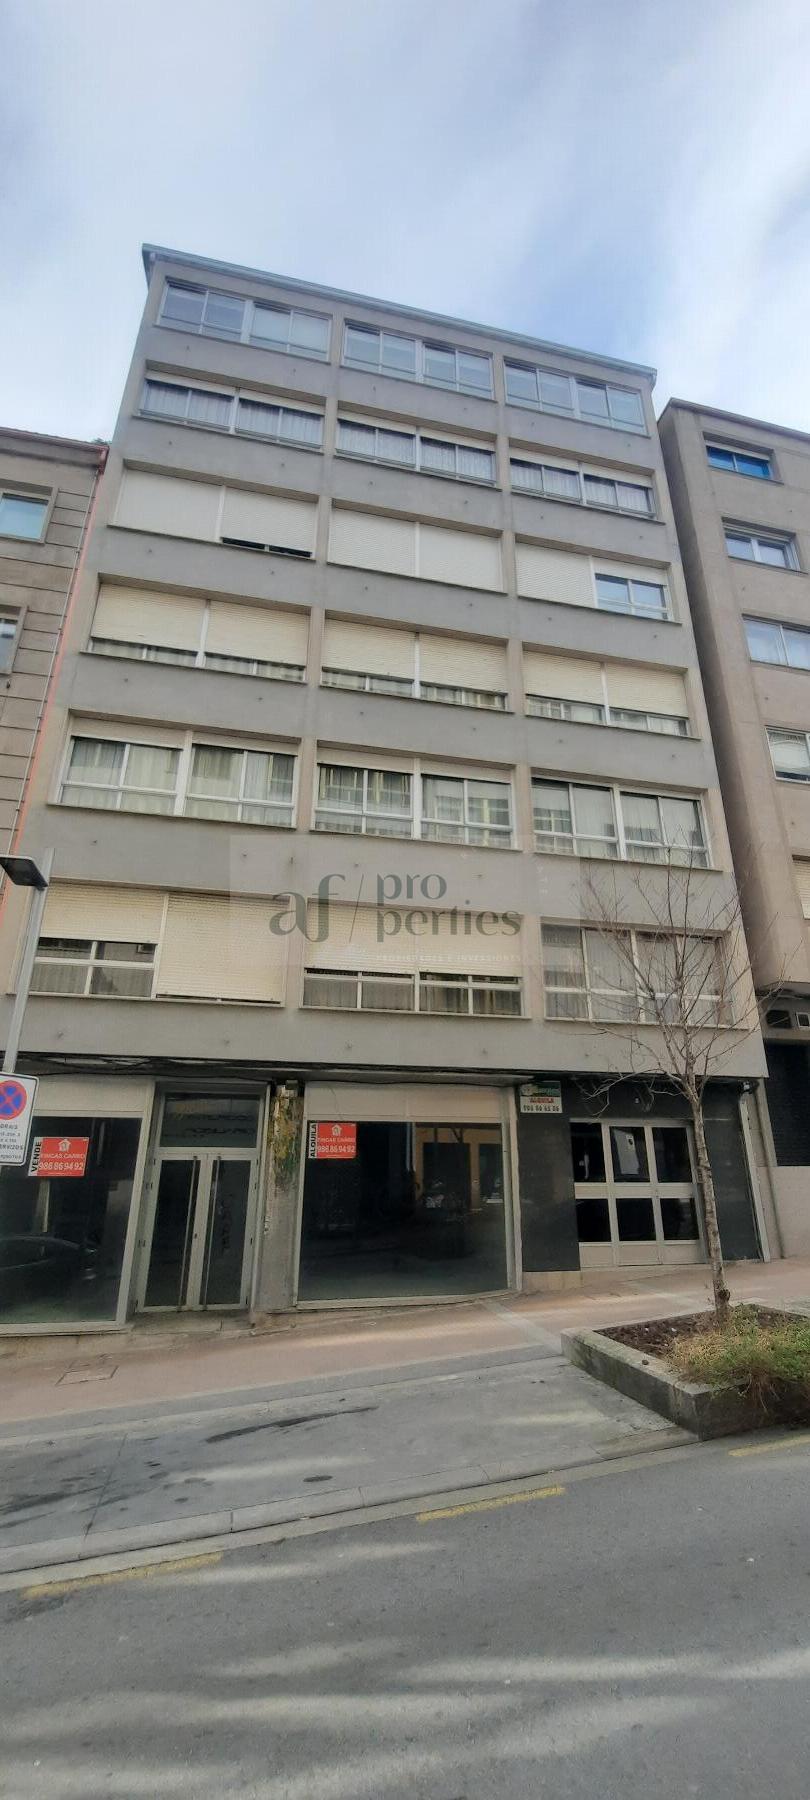 Venda de apartamento em Pontevedra